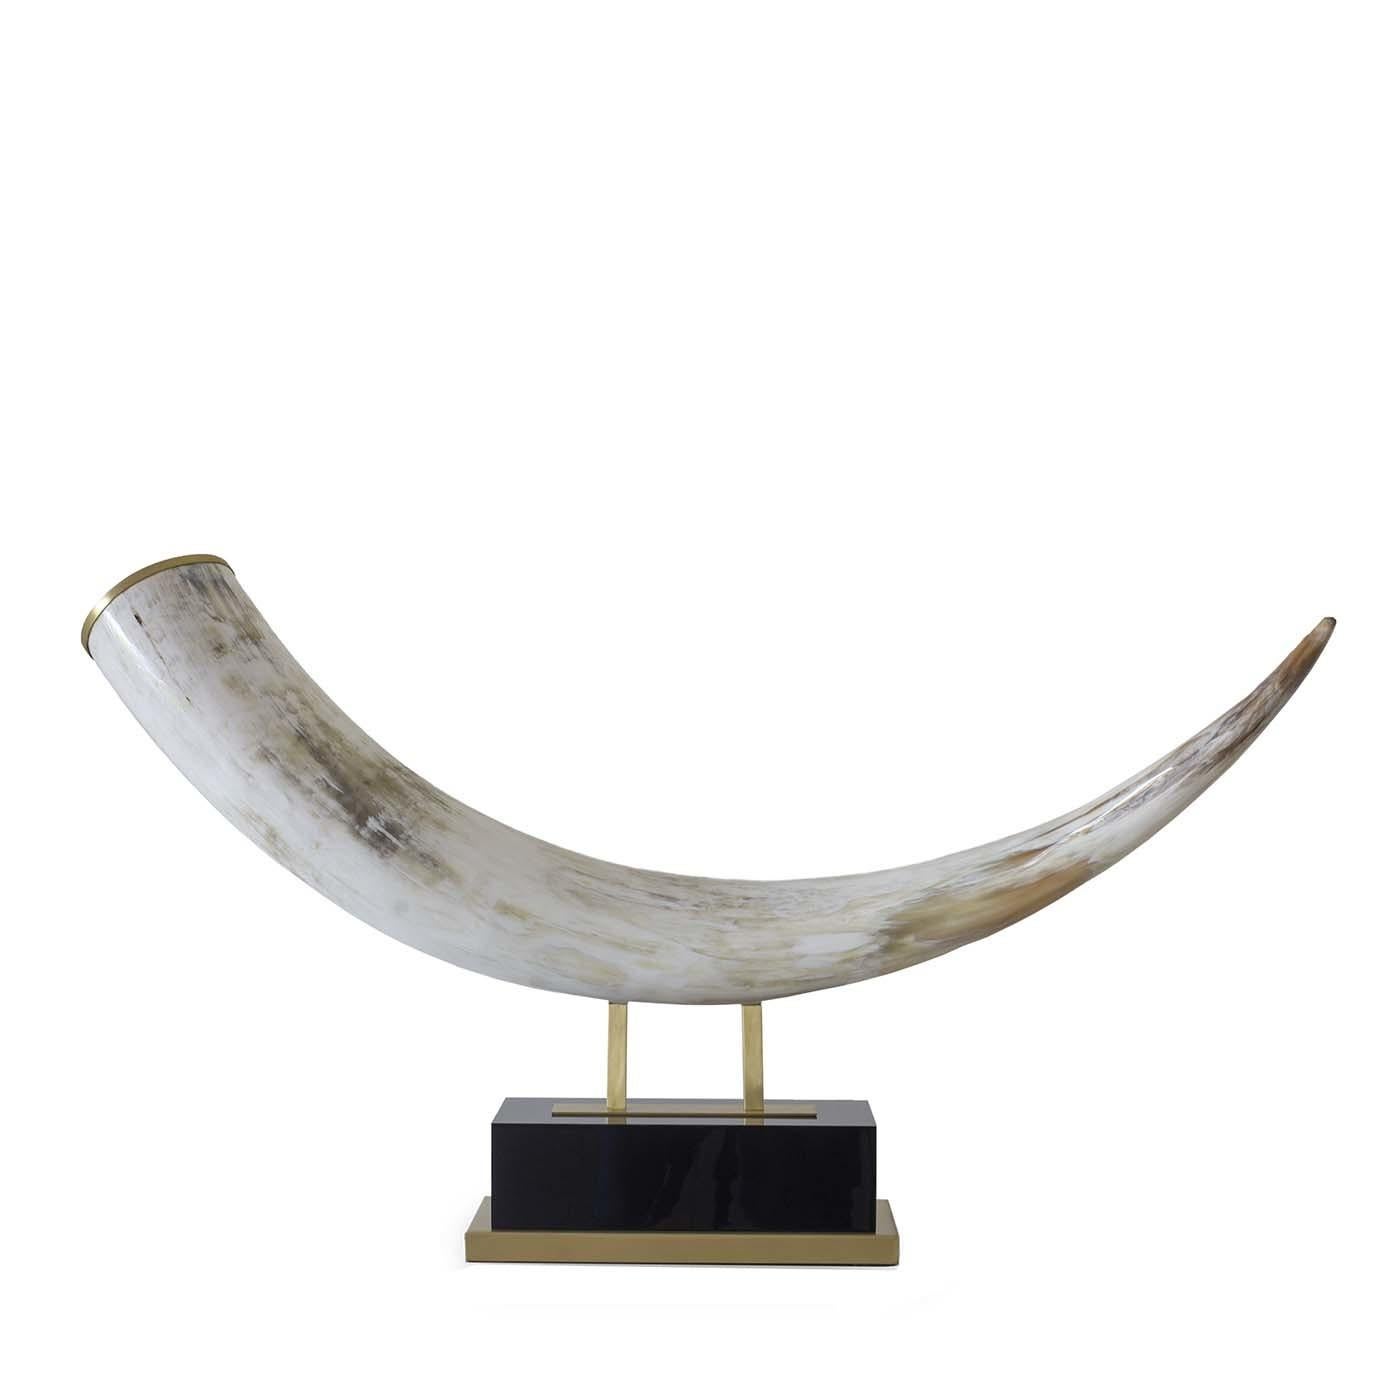 Modern Horn Sculpture by Zanchi 1952